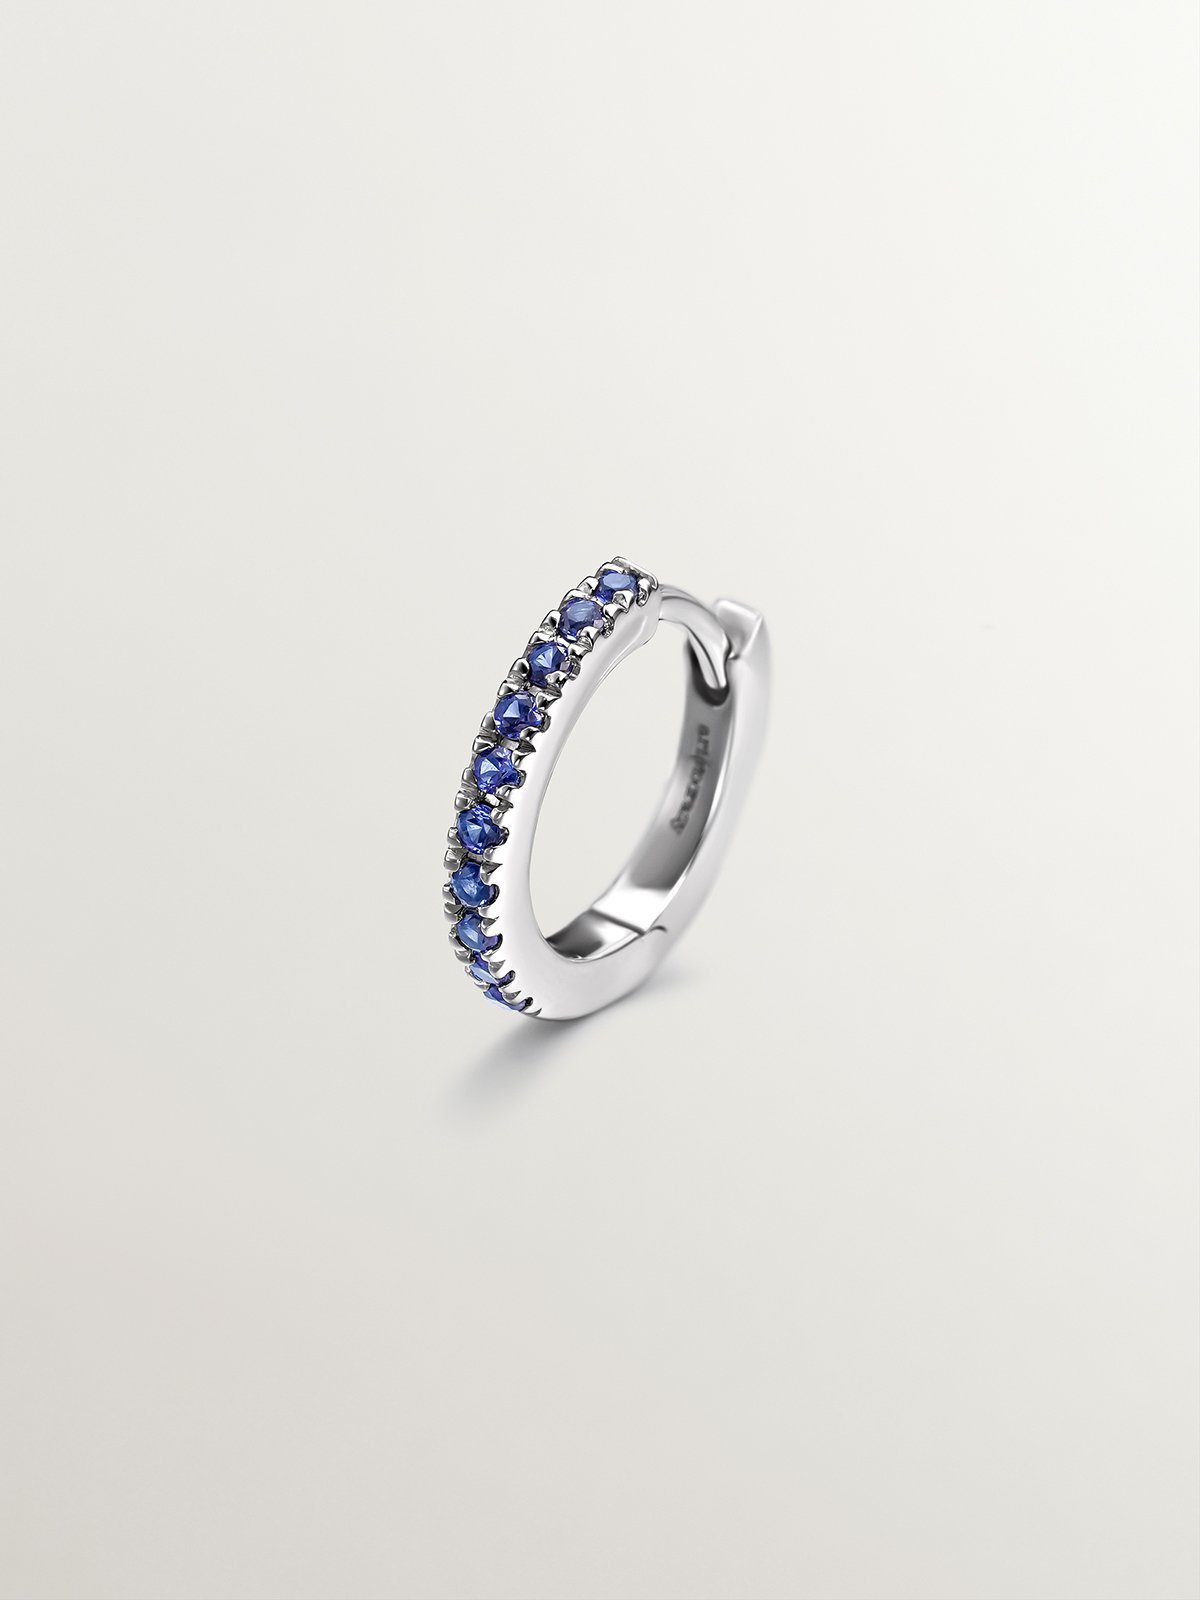 Boucle d'oreille individuelle en petit anneau d'or blanc 9K avec des saphirs bleus